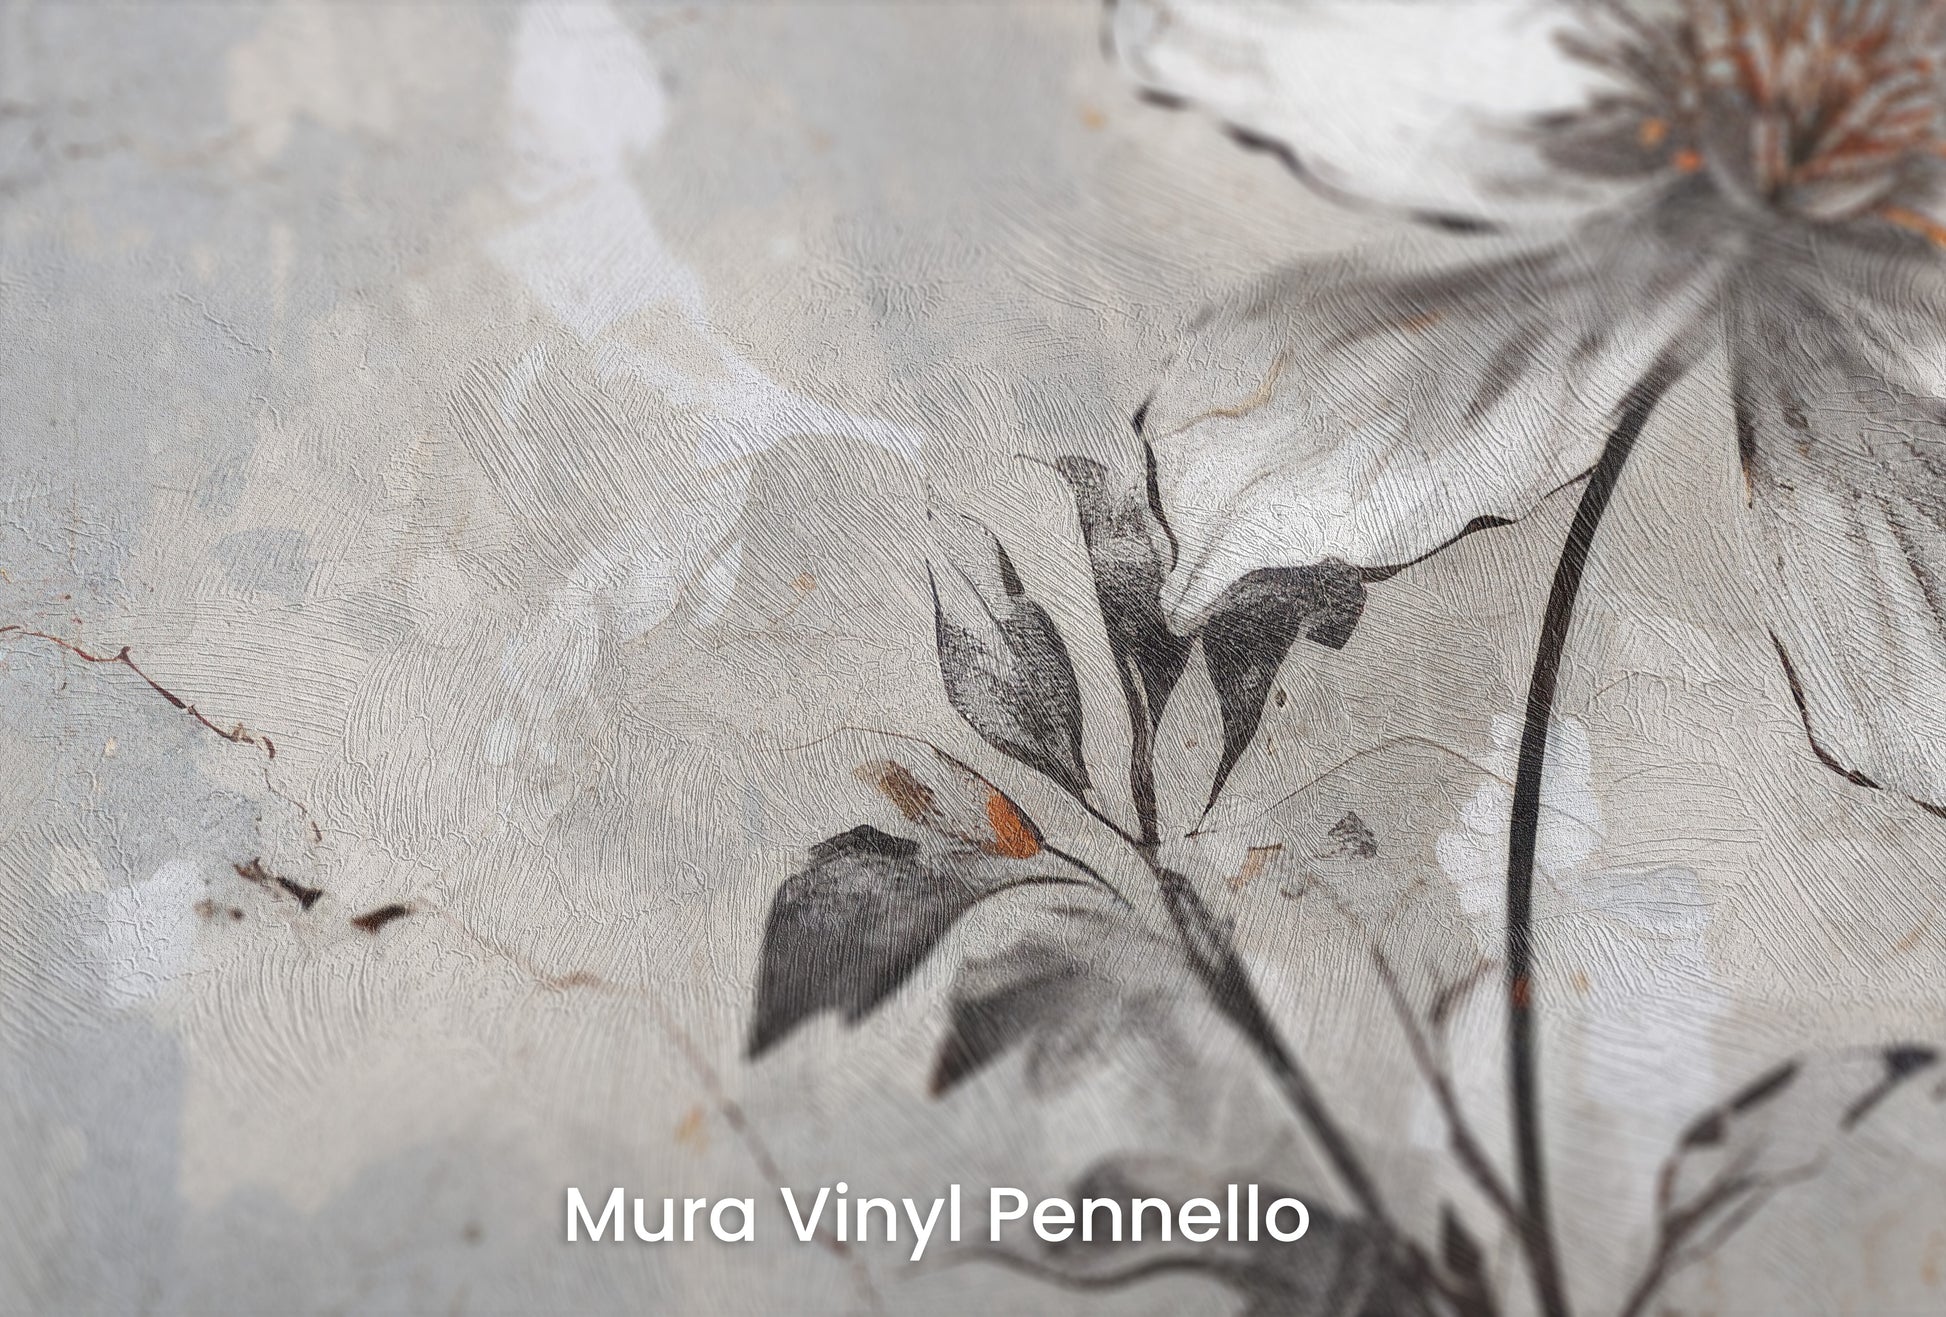 Zbliżenie na artystyczną fototapetę o nazwie INDUSTRIAL FLOWER ELEGANCE na podłożu Mura Vinyl Pennello - faktura pociągnięć pędzla malarskiego.